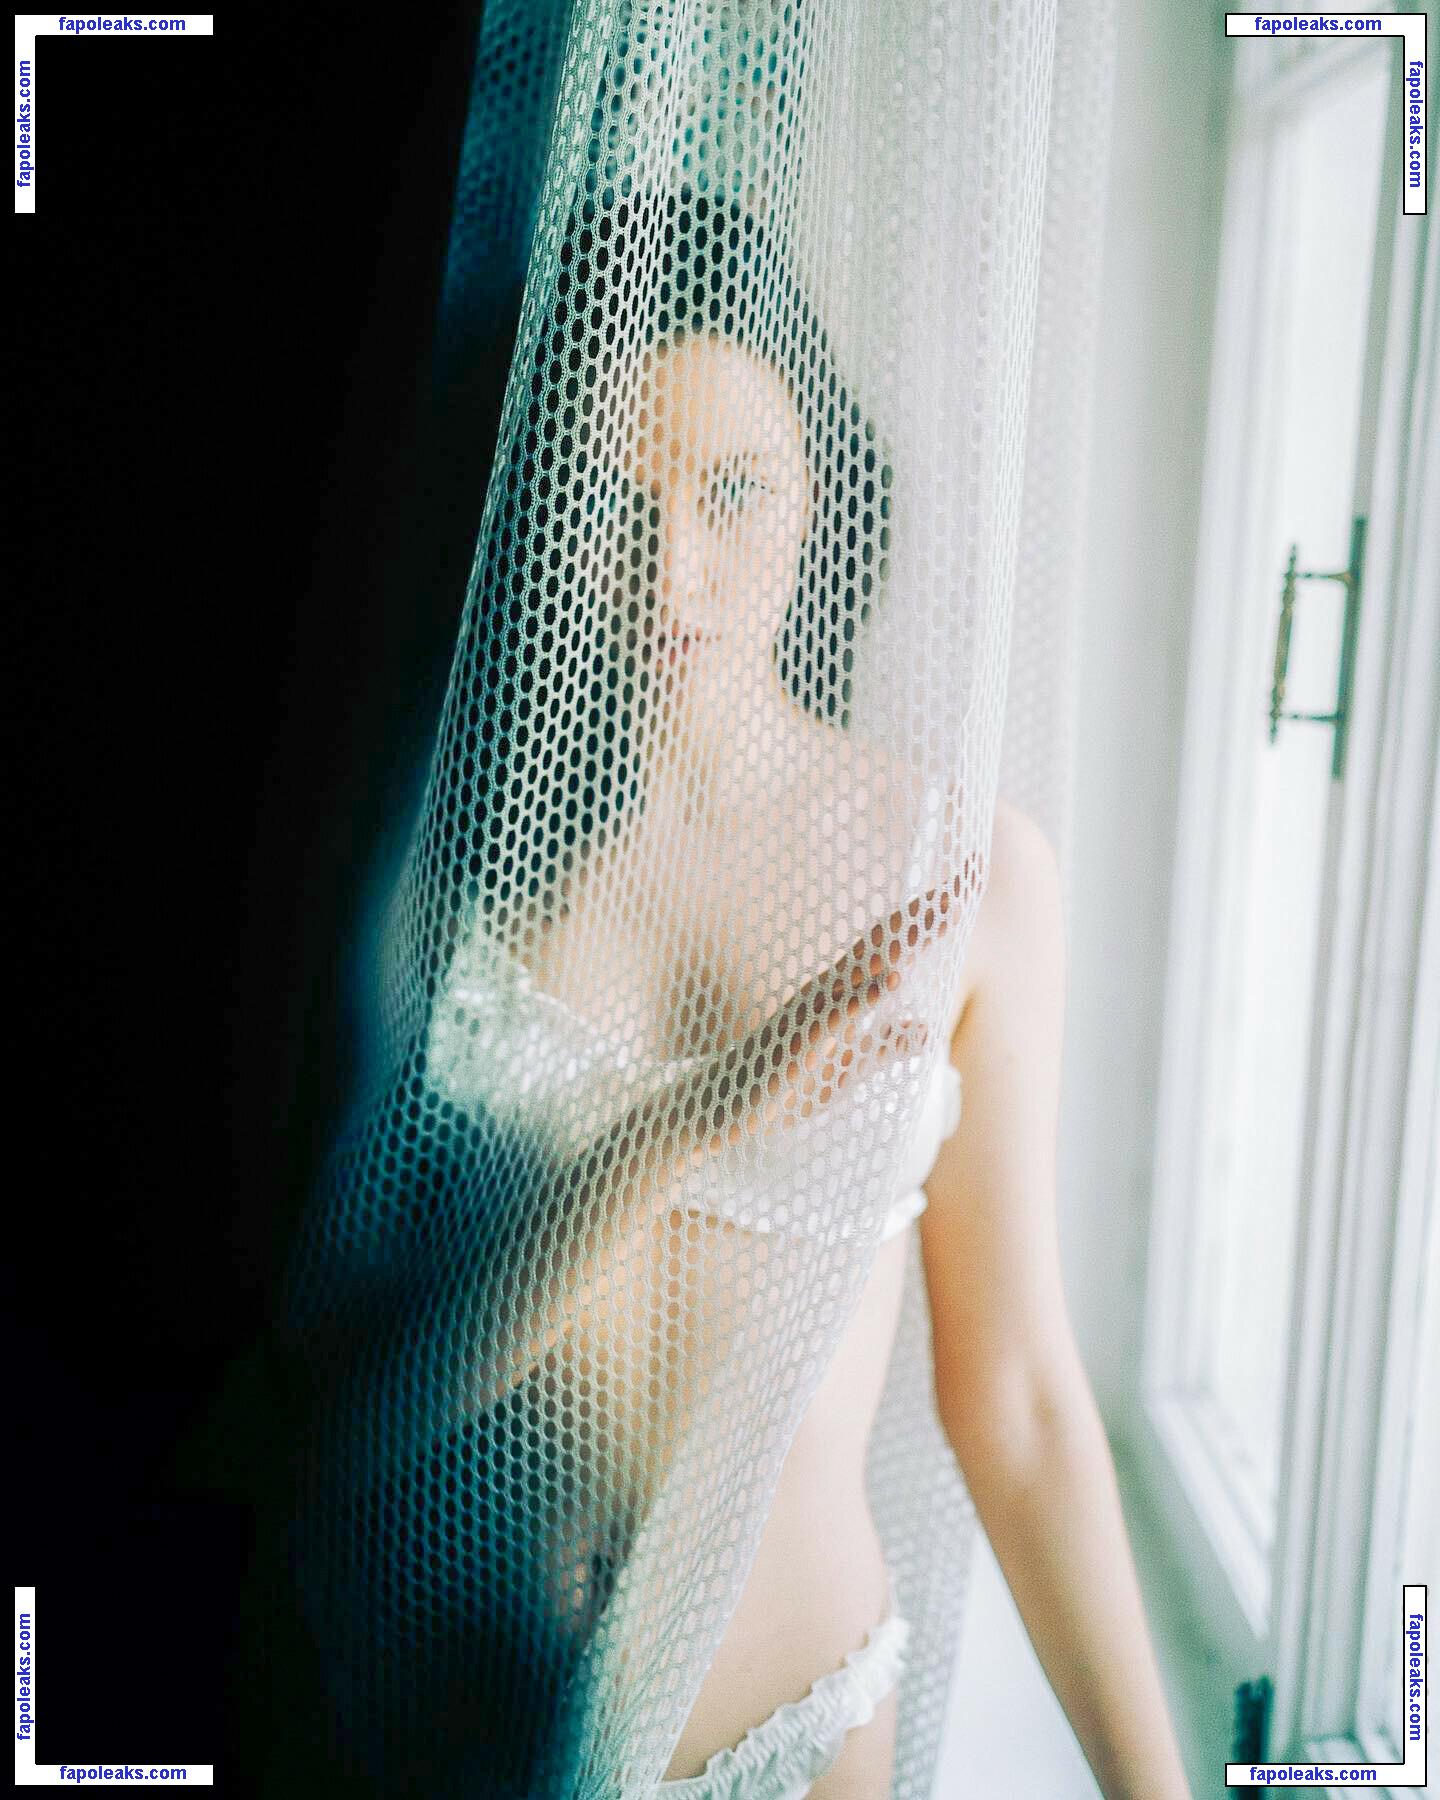 katya_mozhina / Katenka Mozhina / katyamozhina nude photo #0058 from OnlyFans